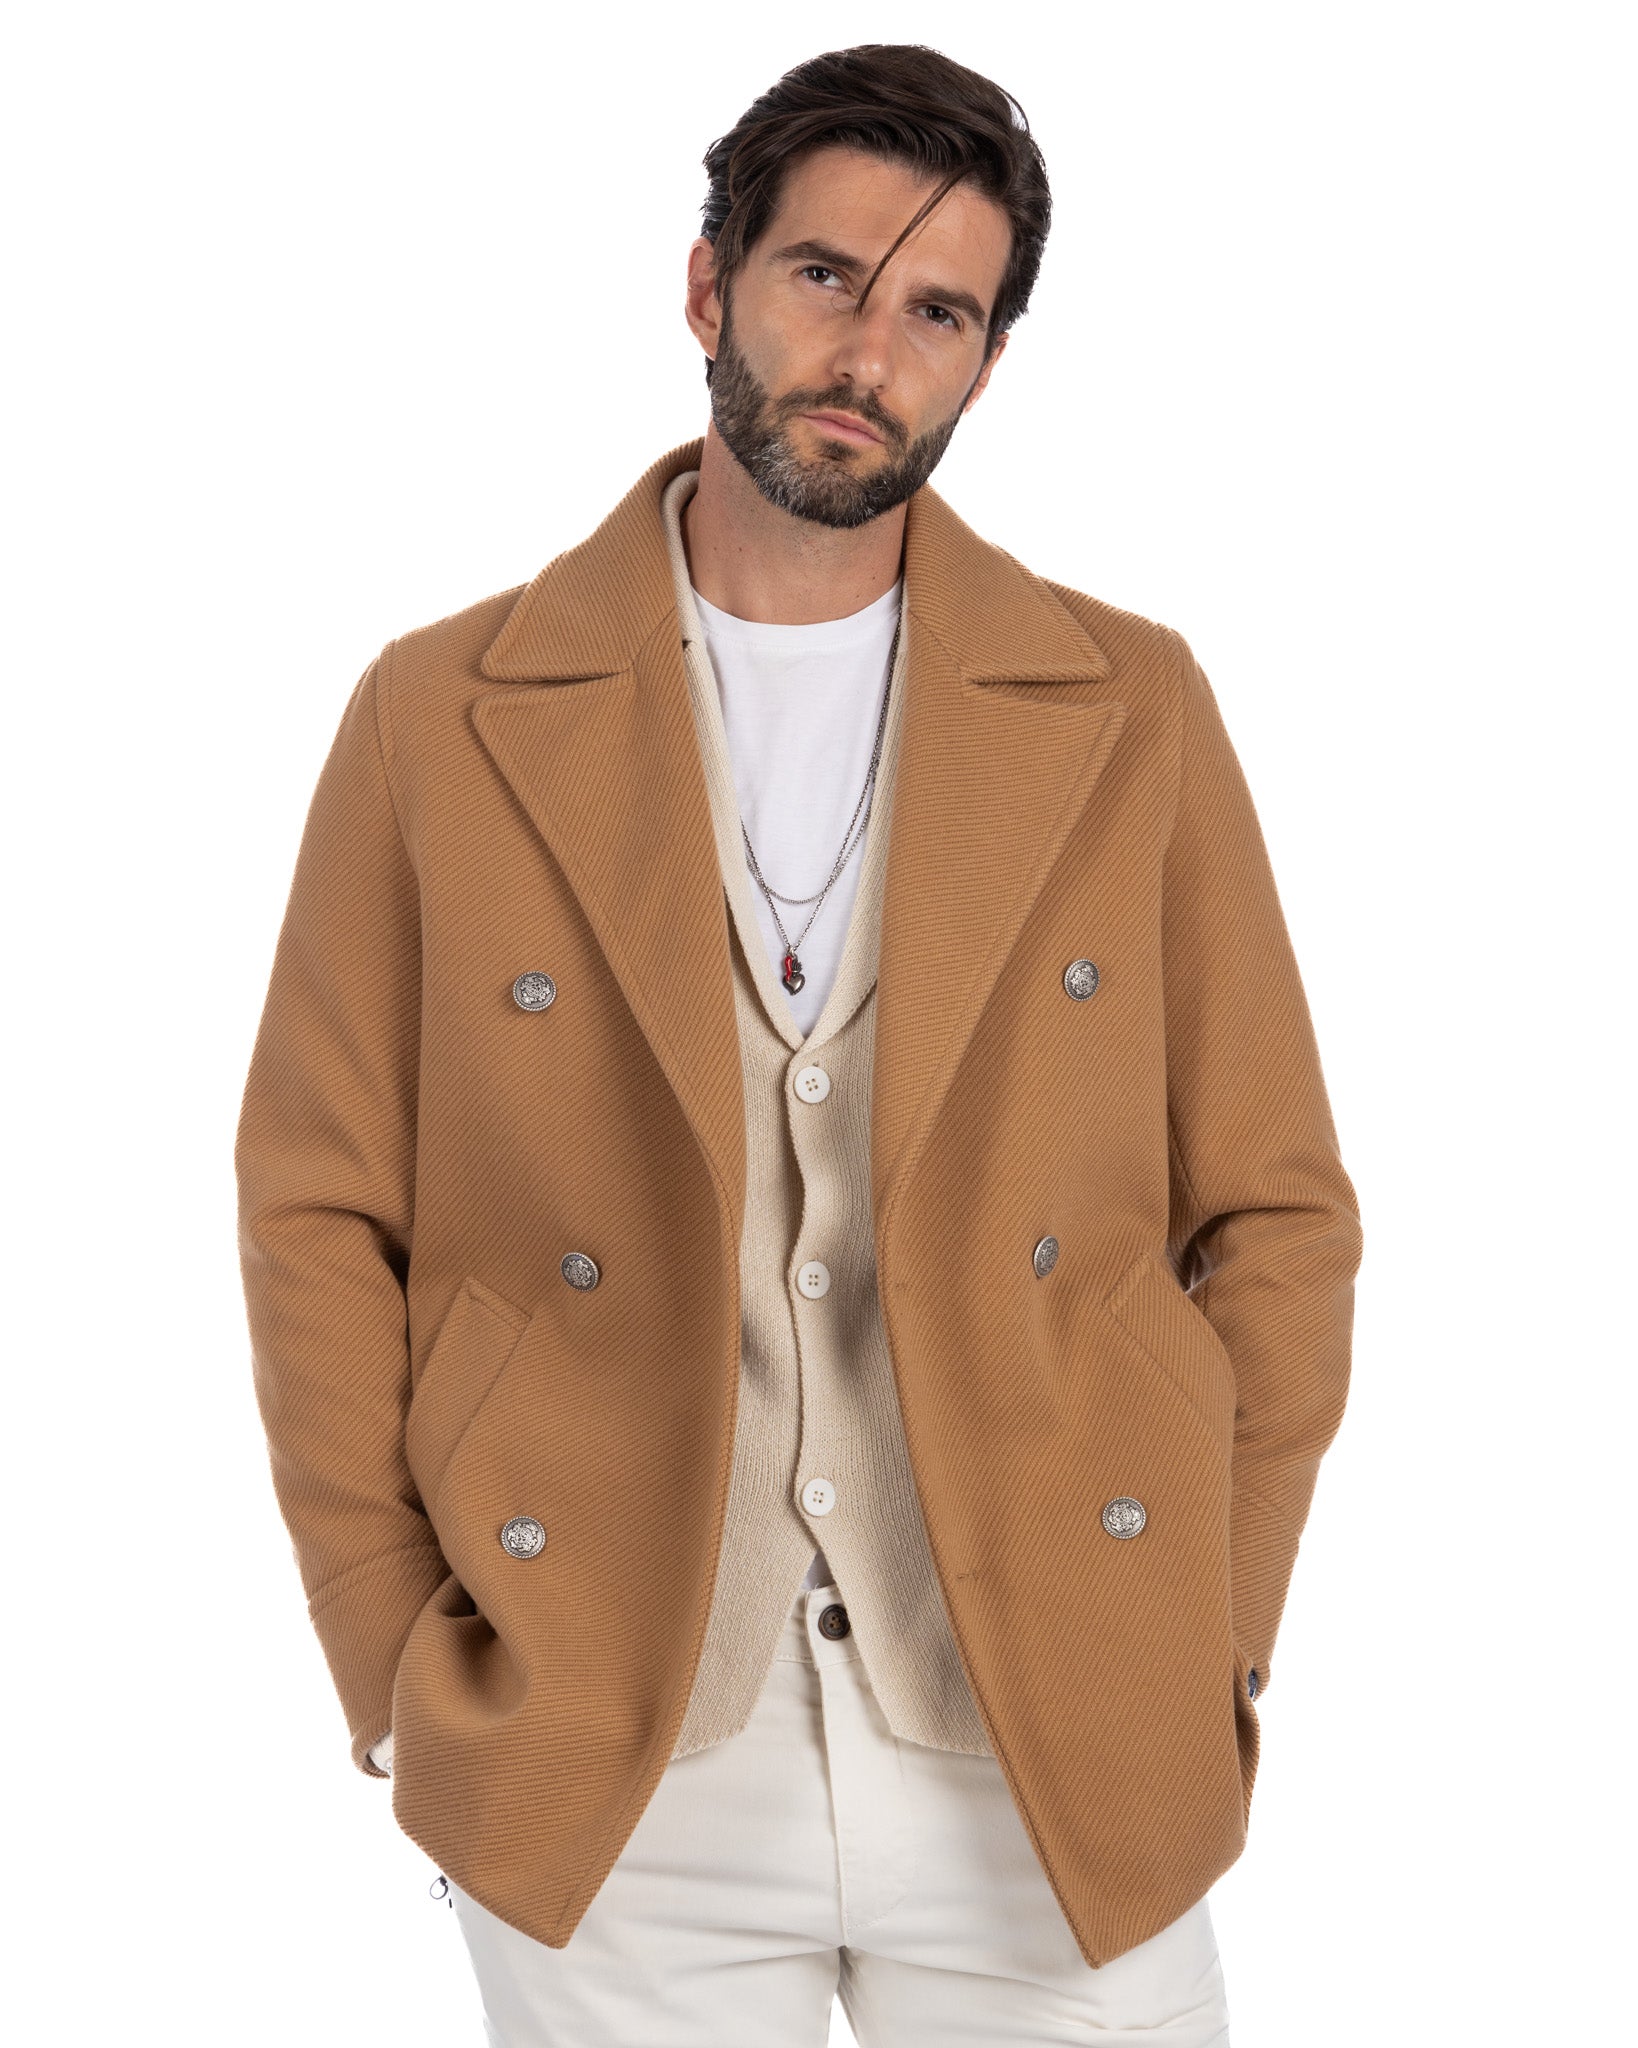 David - beige 3/4 wool coat